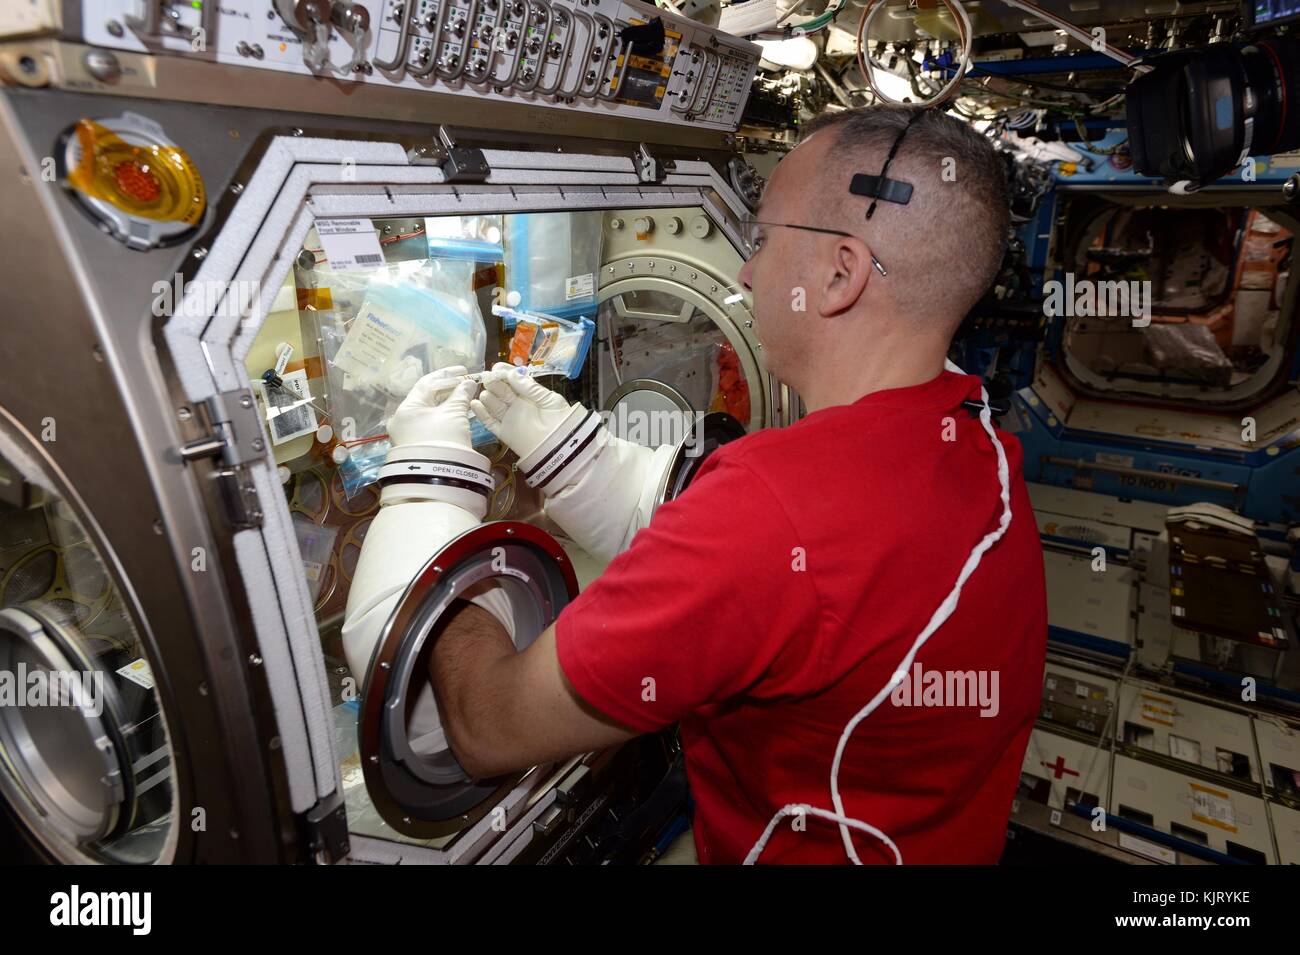 Nasa-Expedition 52/53 prime Besatzungsmitglied amerikanische Astronaut Randy Bresnik arbeitet auf Krebsforschung Experiment an Bord der Internationalen Raumstation US-Labor Destiny Modul Handschuhkasten für Schwerelosigkeitsforschung Oktober 24, 2017 in der Erdumlaufbahn. (Foto: Nasa Foto über planetpix) Stockfoto